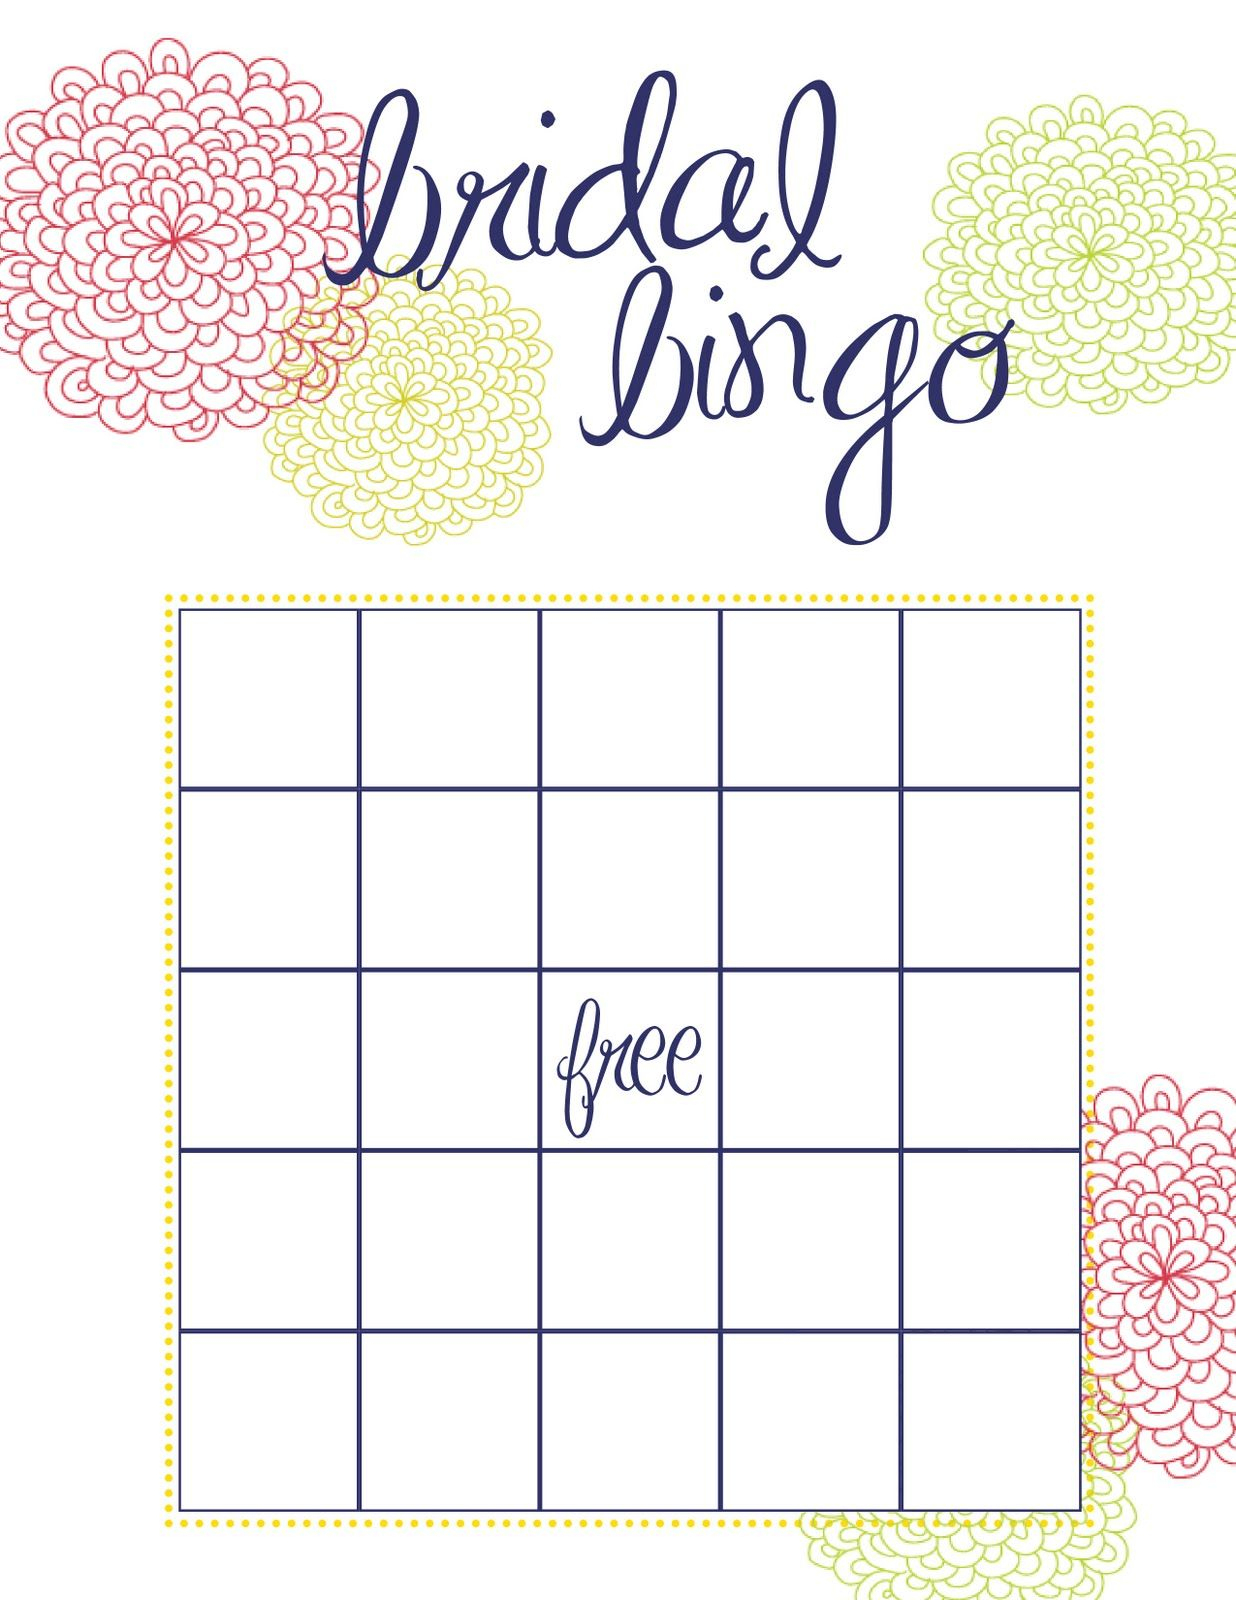 Busy Weekend In The Bow World | Bridal Bingo, Bridal